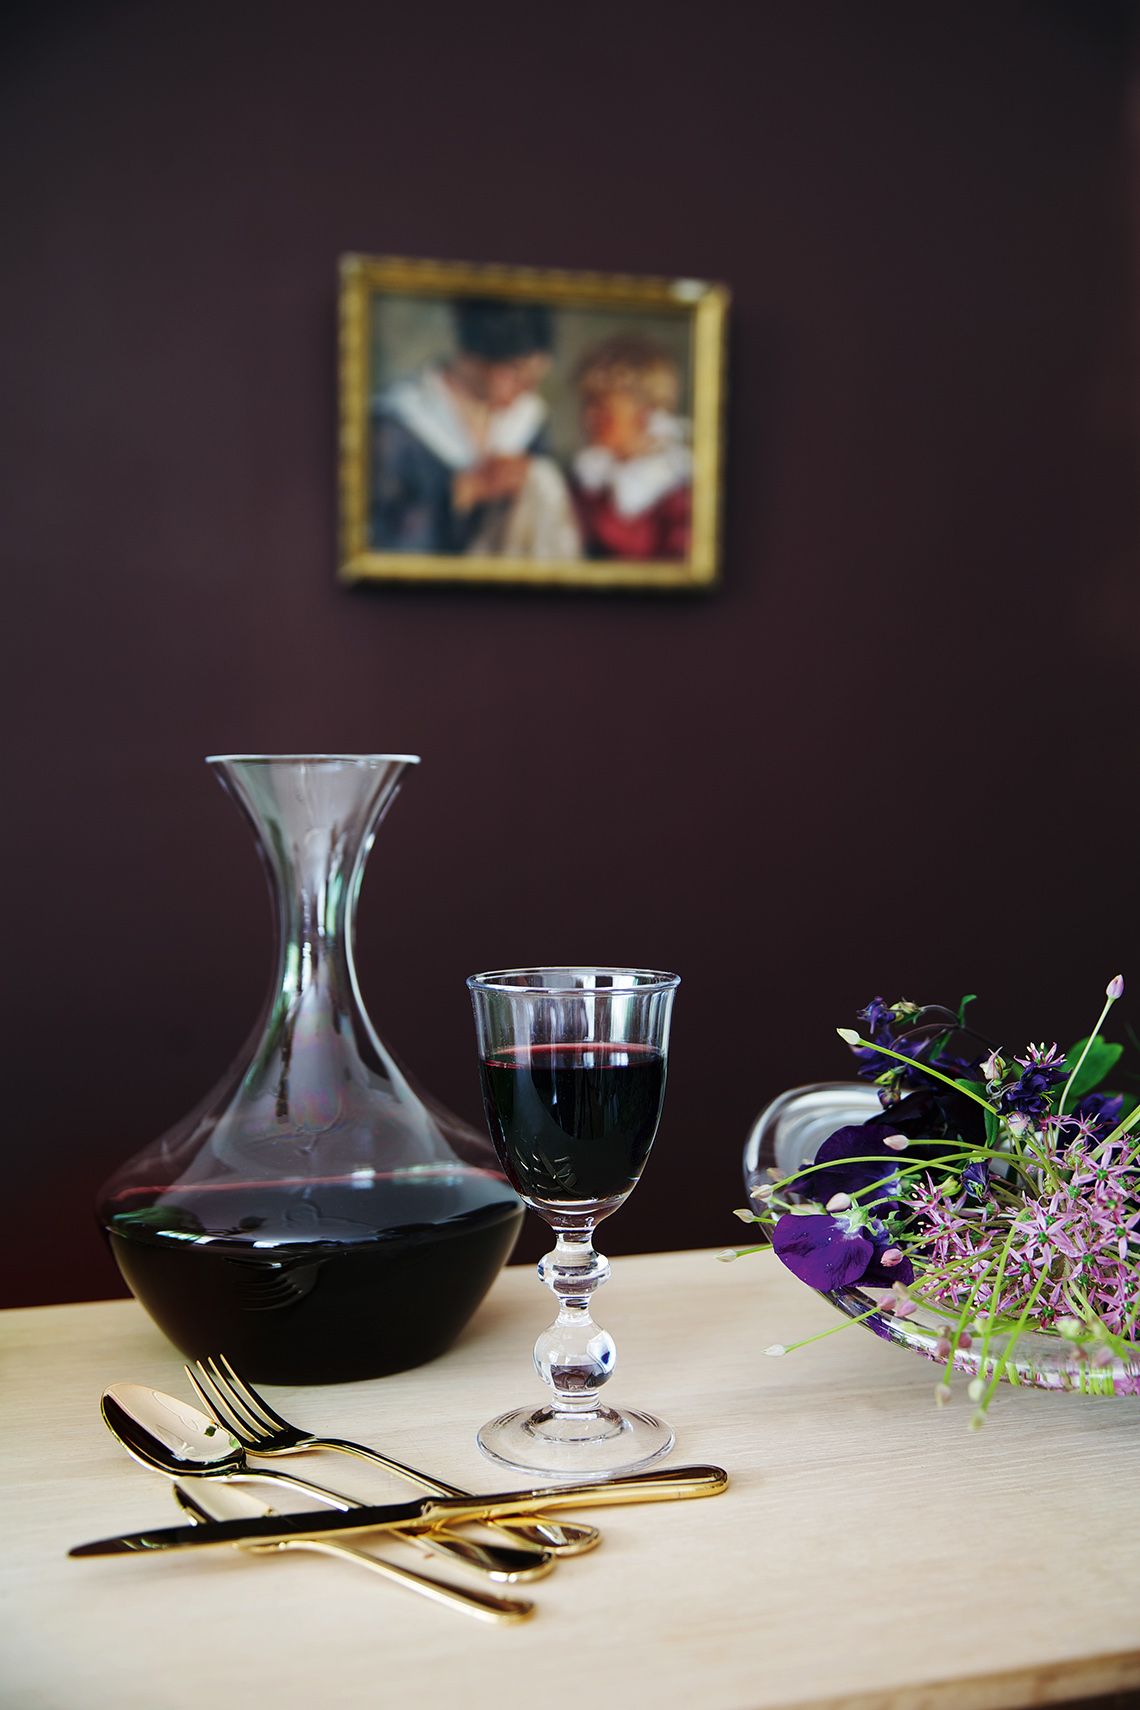 Karafka-dekanter, marki Holmegaard, wykonana z luksusowego szkła, to idealny prezent